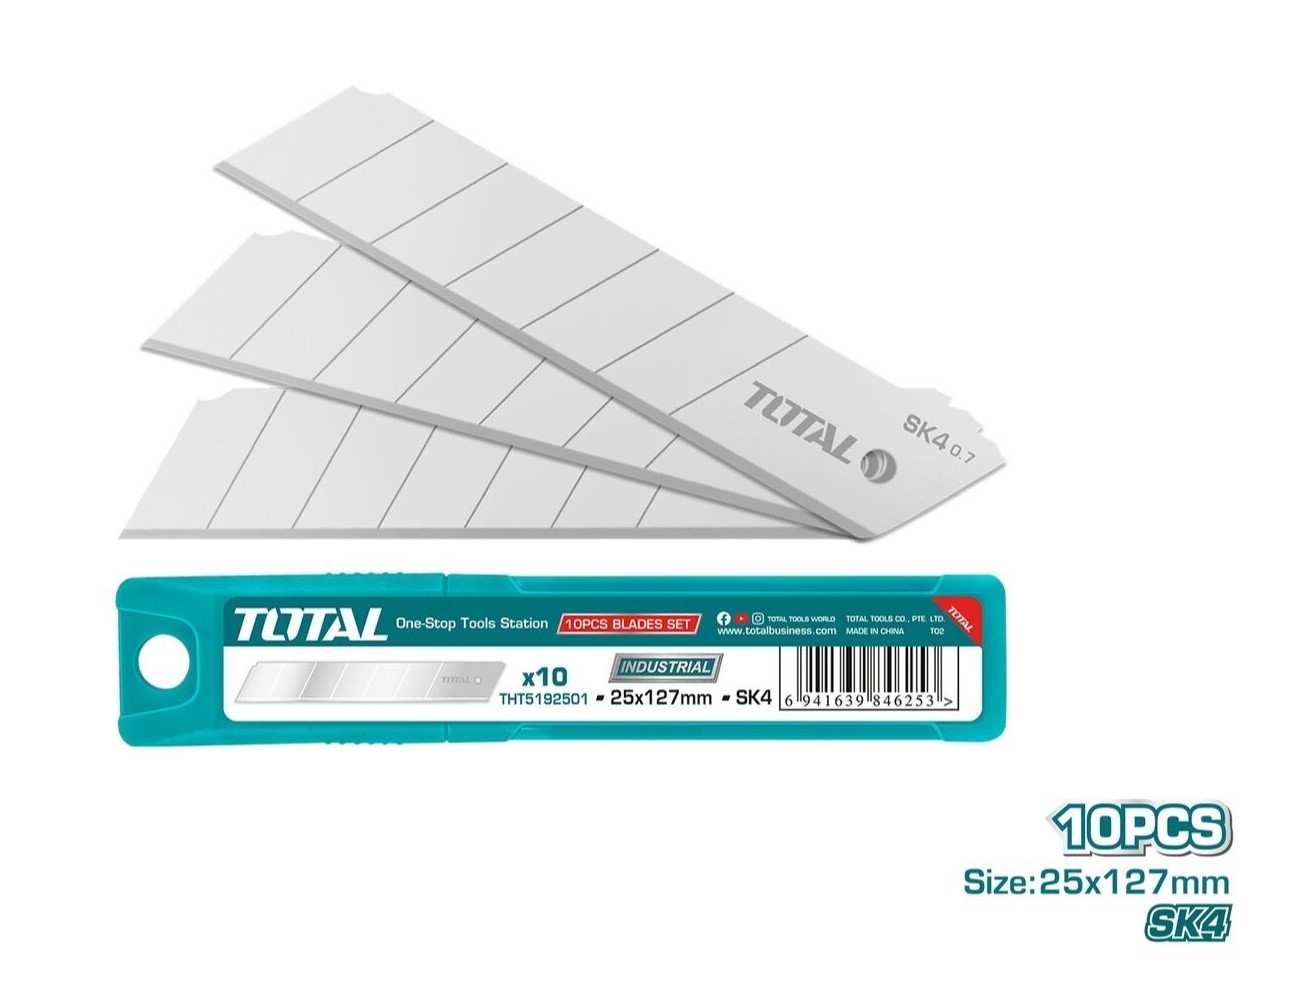 Hình ảnh 1 của mặt hàng Bộ 10 lưỡi dao 25x127mm total THT5192501